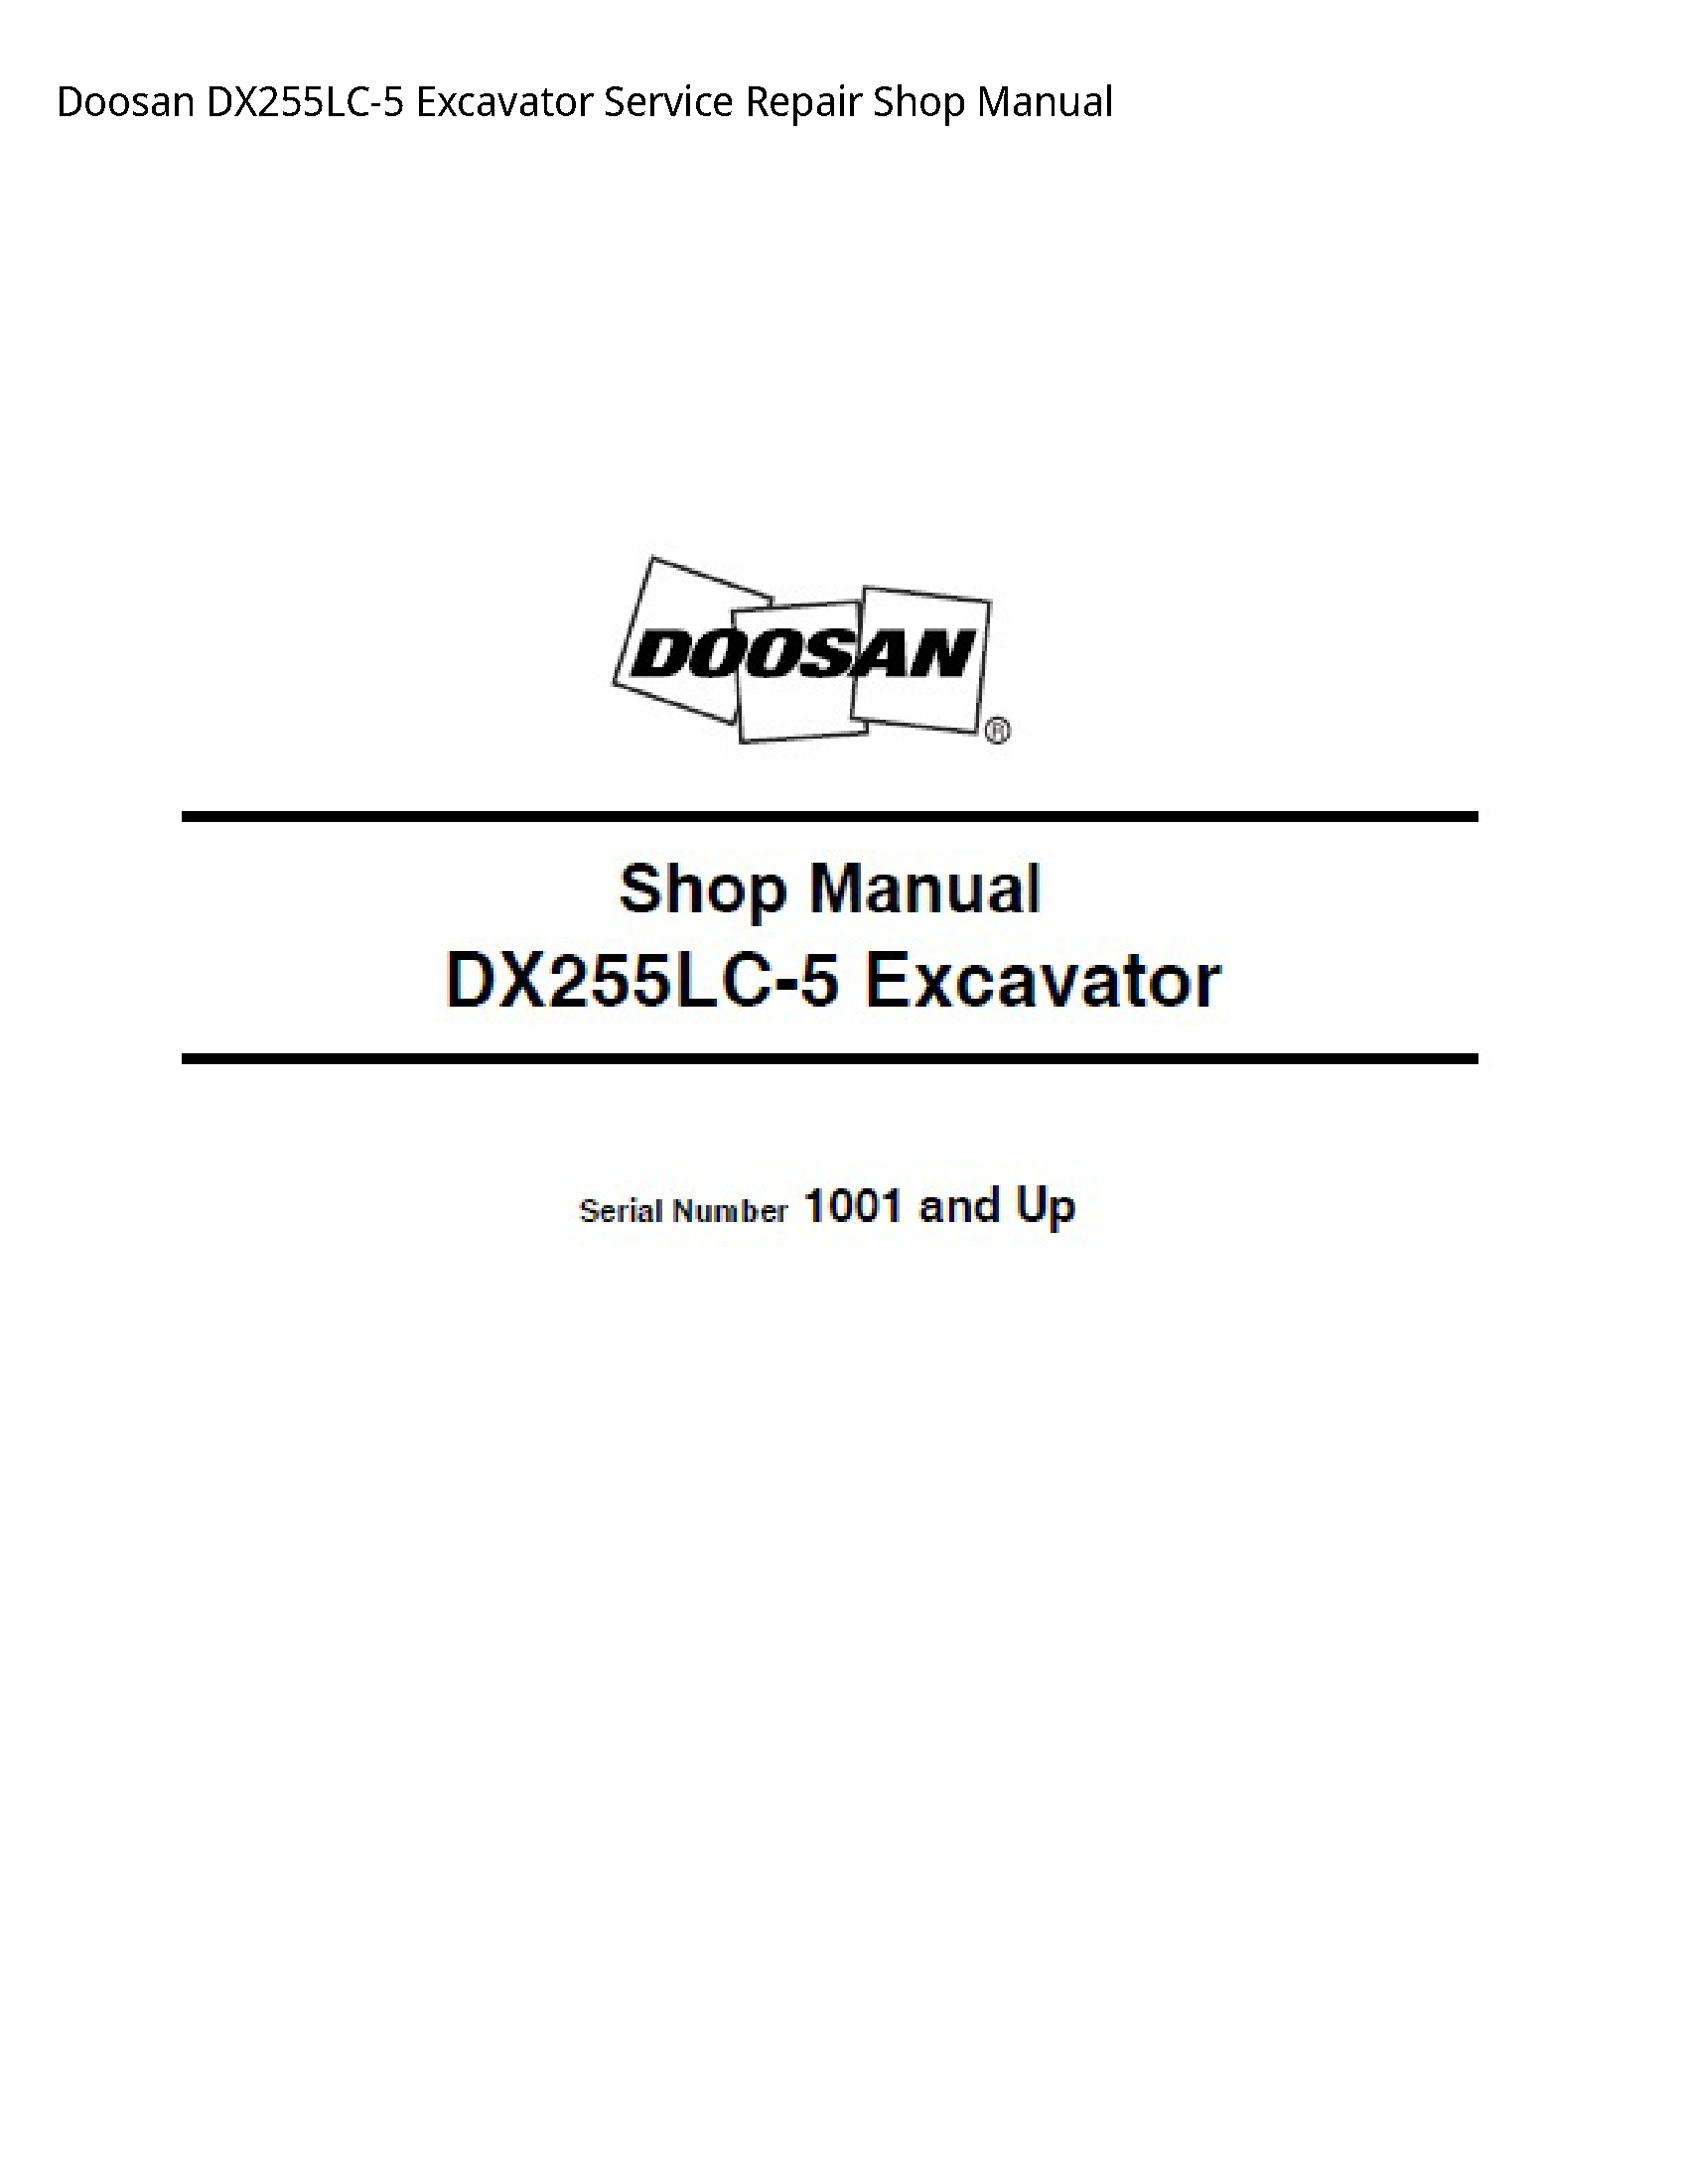 Doosan DX255LC-5 Excavator manual